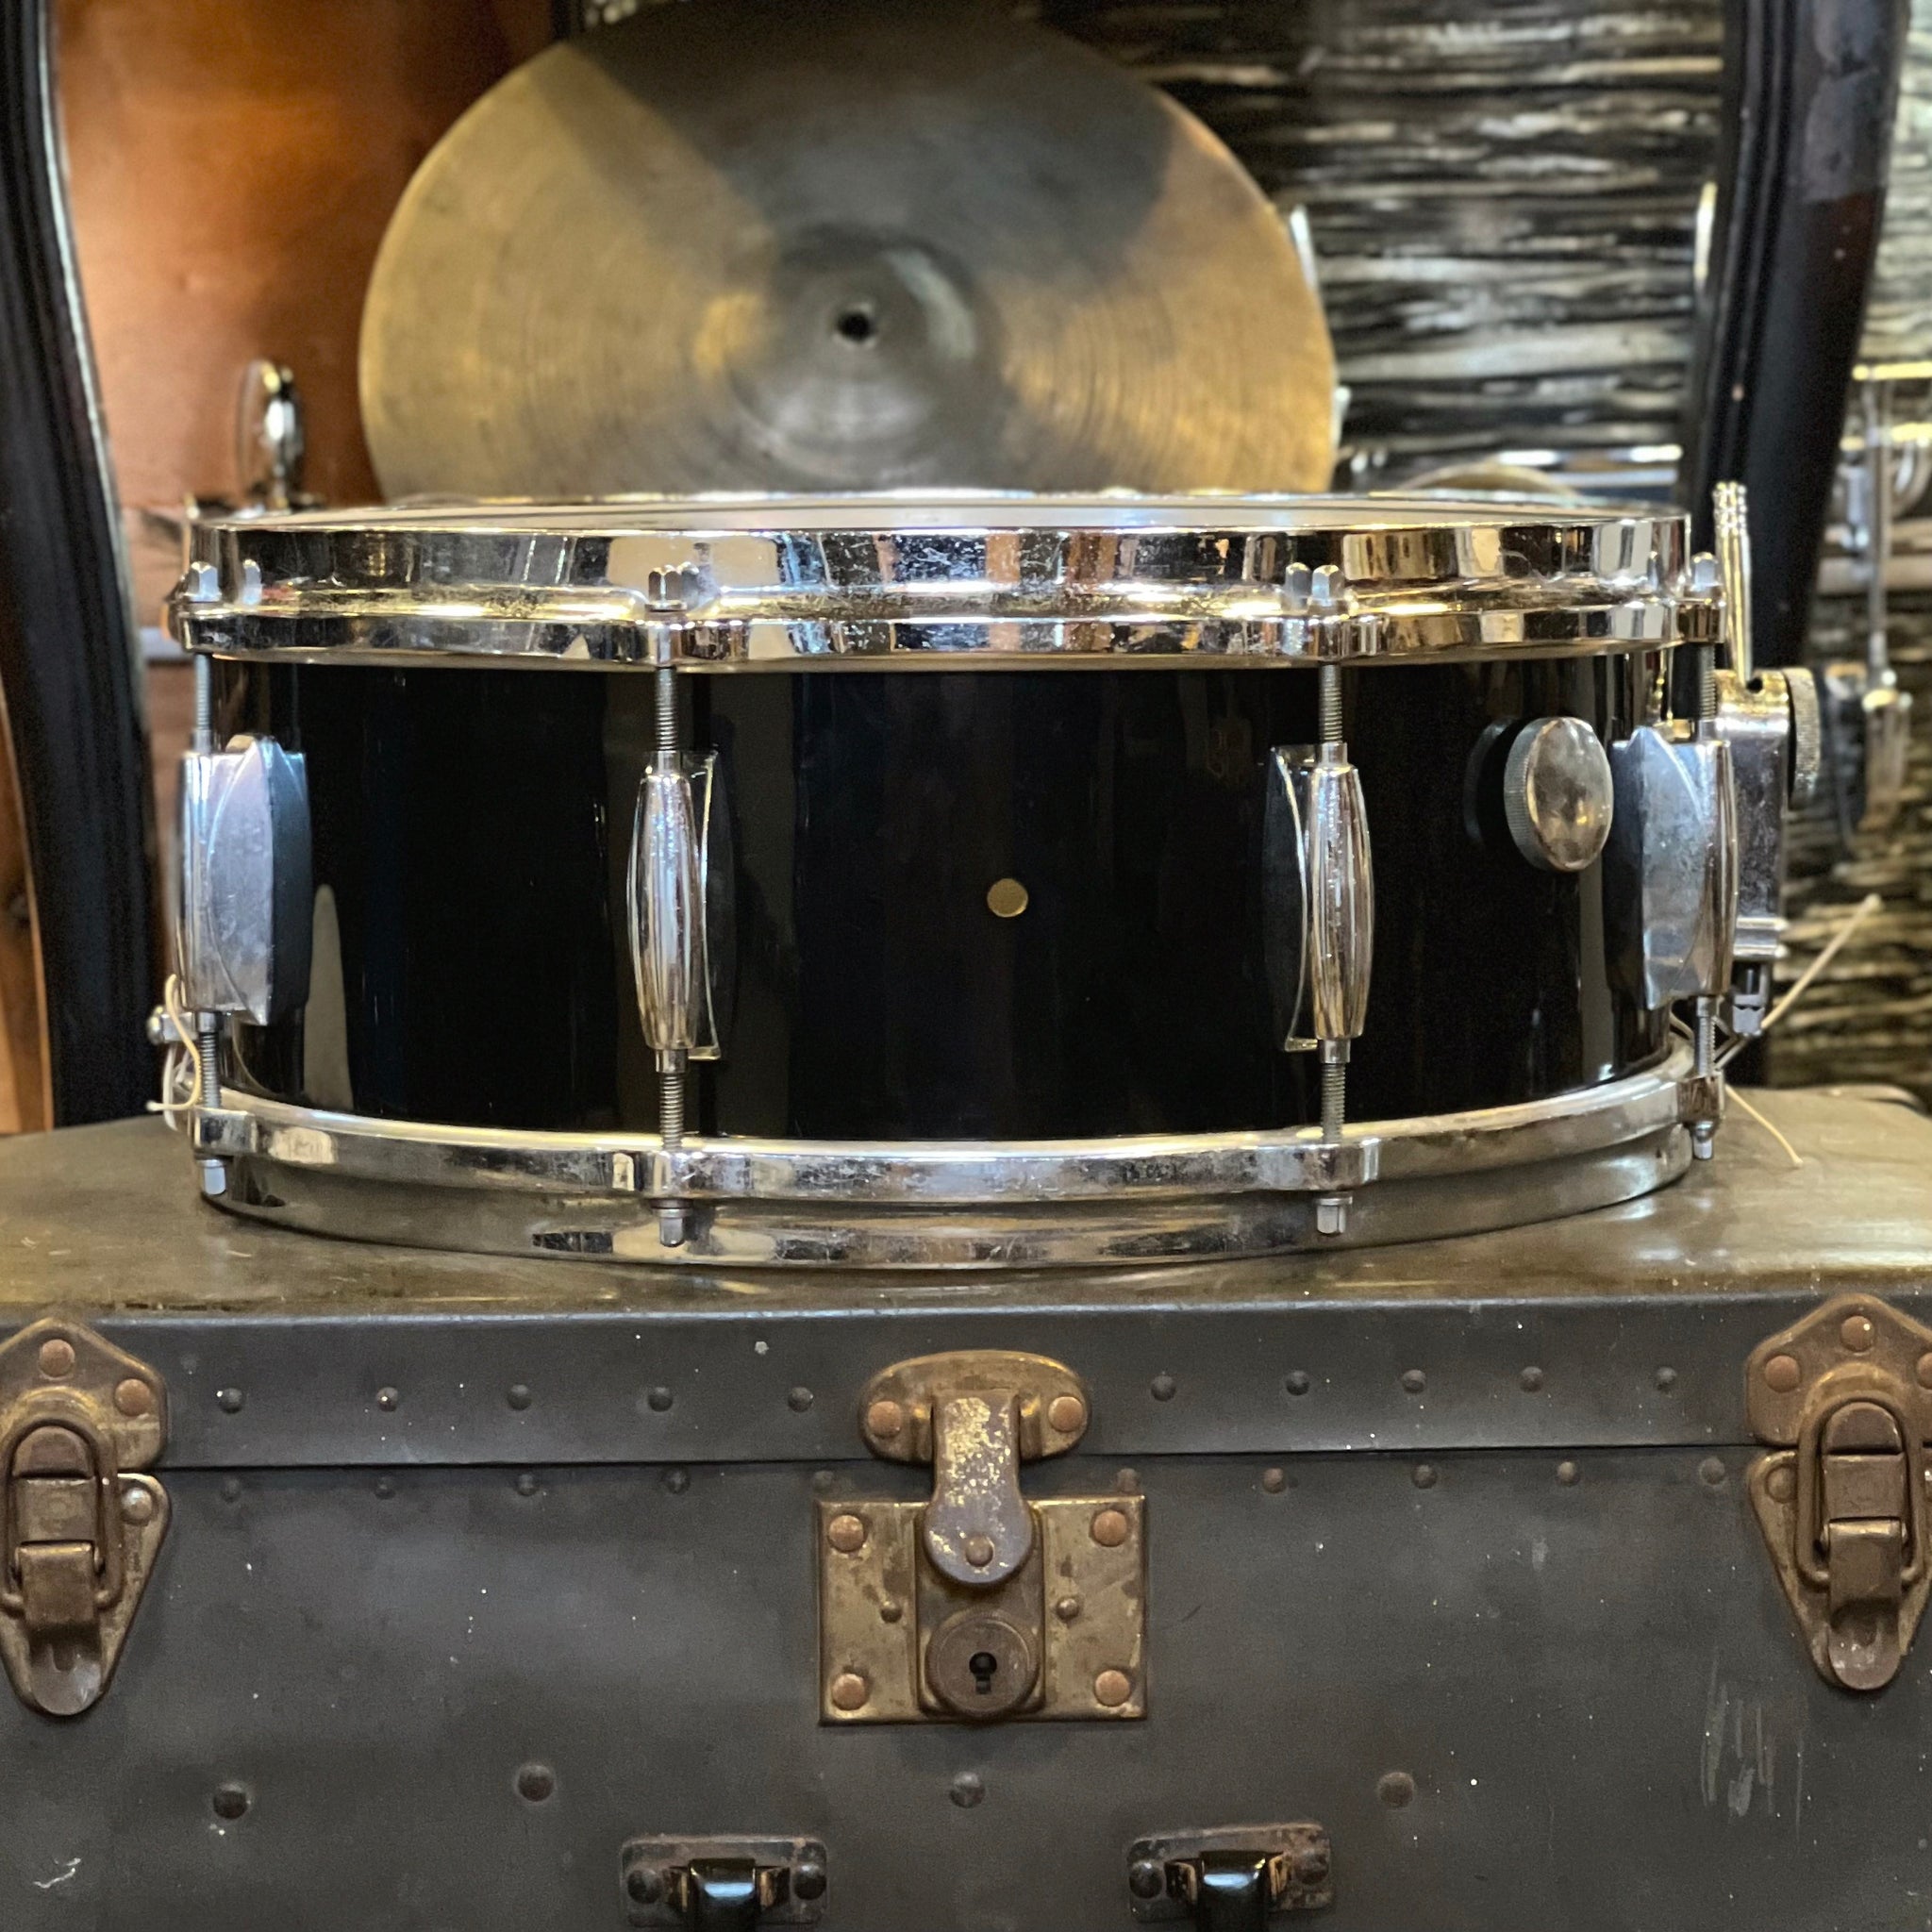 VINTAGE 1950's Gretsch 5.5x14 Snare Drum in Rewrapped Black Nitron